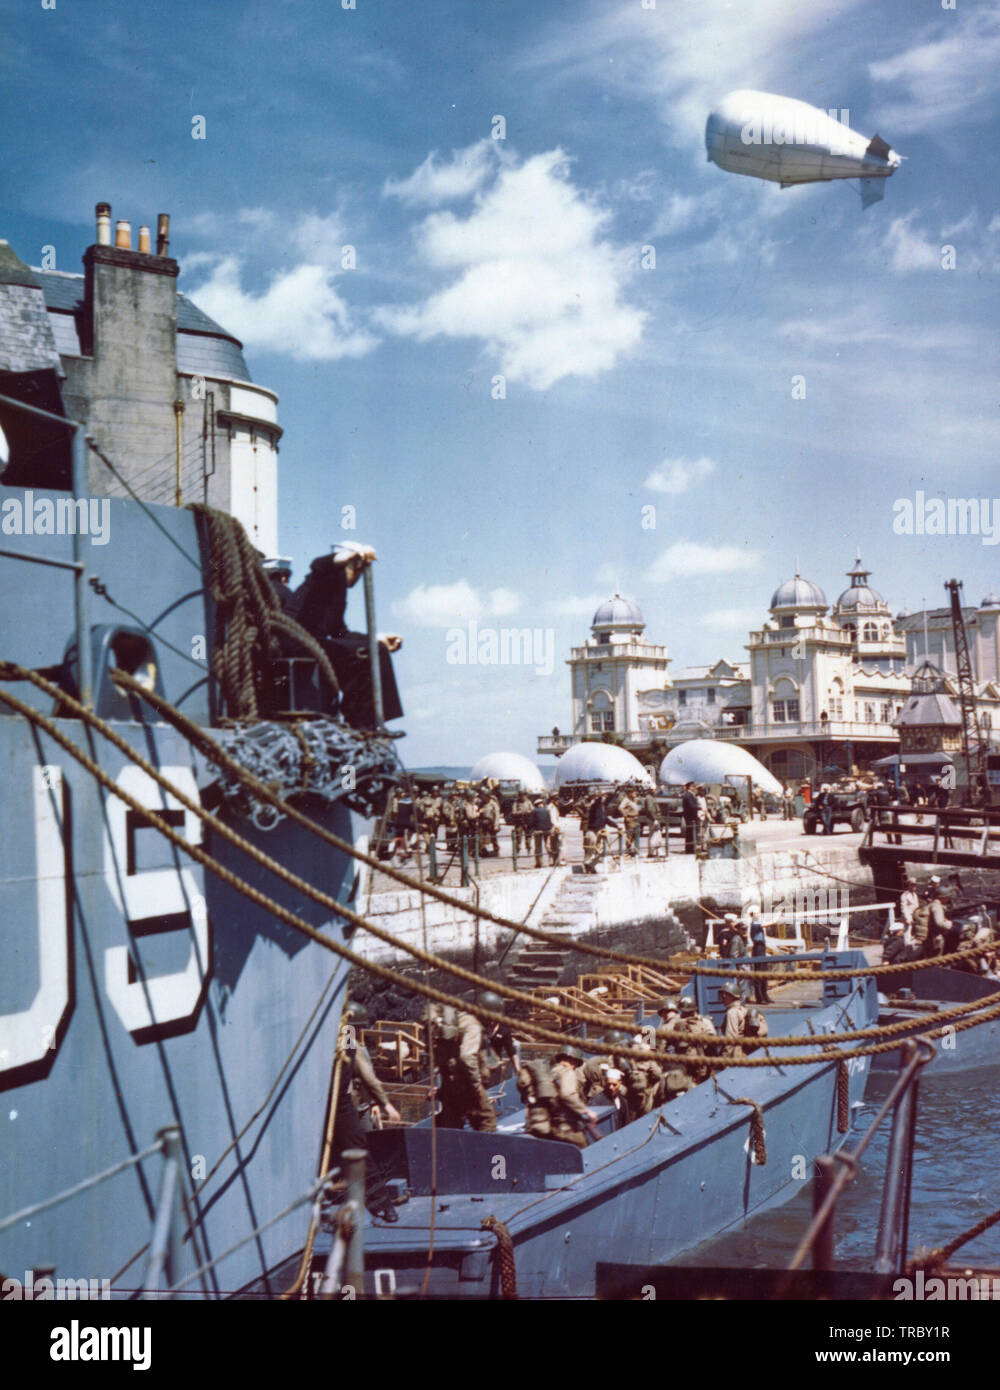 Les troupes américaines à un port britannique descendre dans des barges qui les mènera vers des troupes à partir de laquelle ils vont lancer l'attaque contre l'Europe forteresse d'Hitler. Remarque Les ballons de barrage dans l'arrière-plan. 6 juin 1944 Banque D'Images